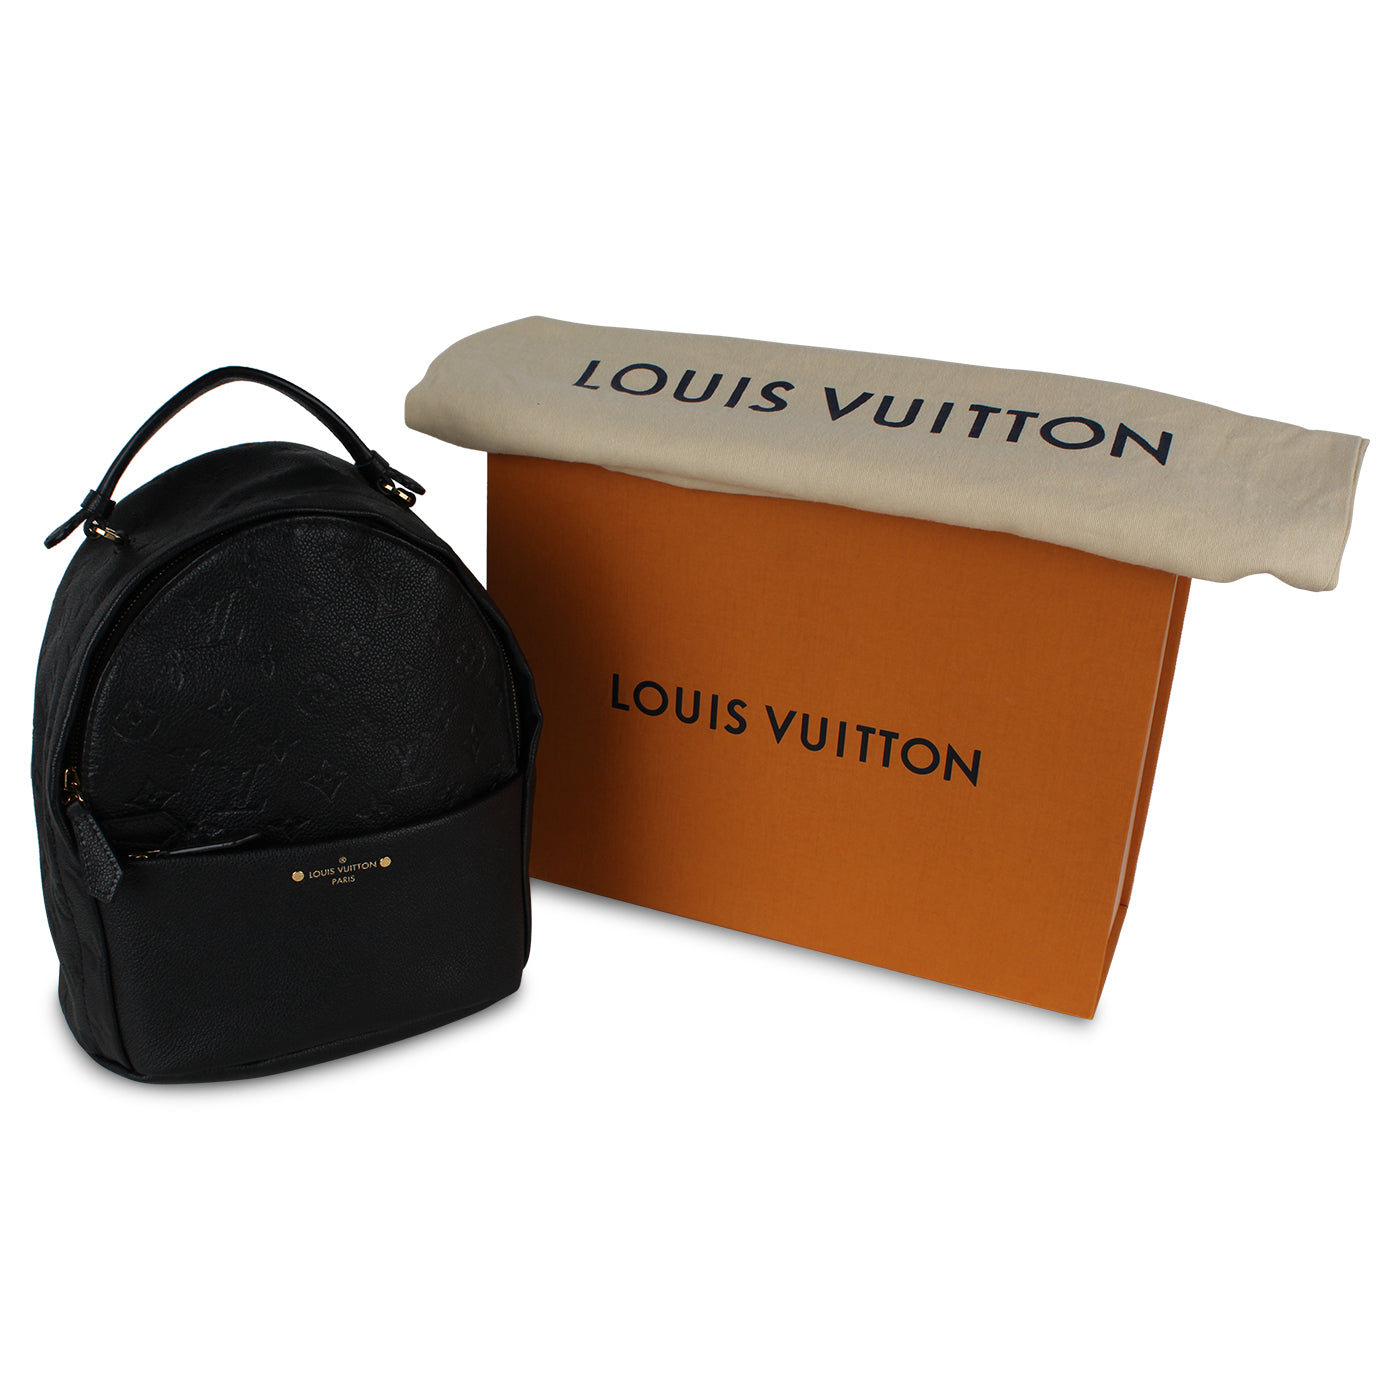 LOUIS VUITTON Sorbonne Backpack